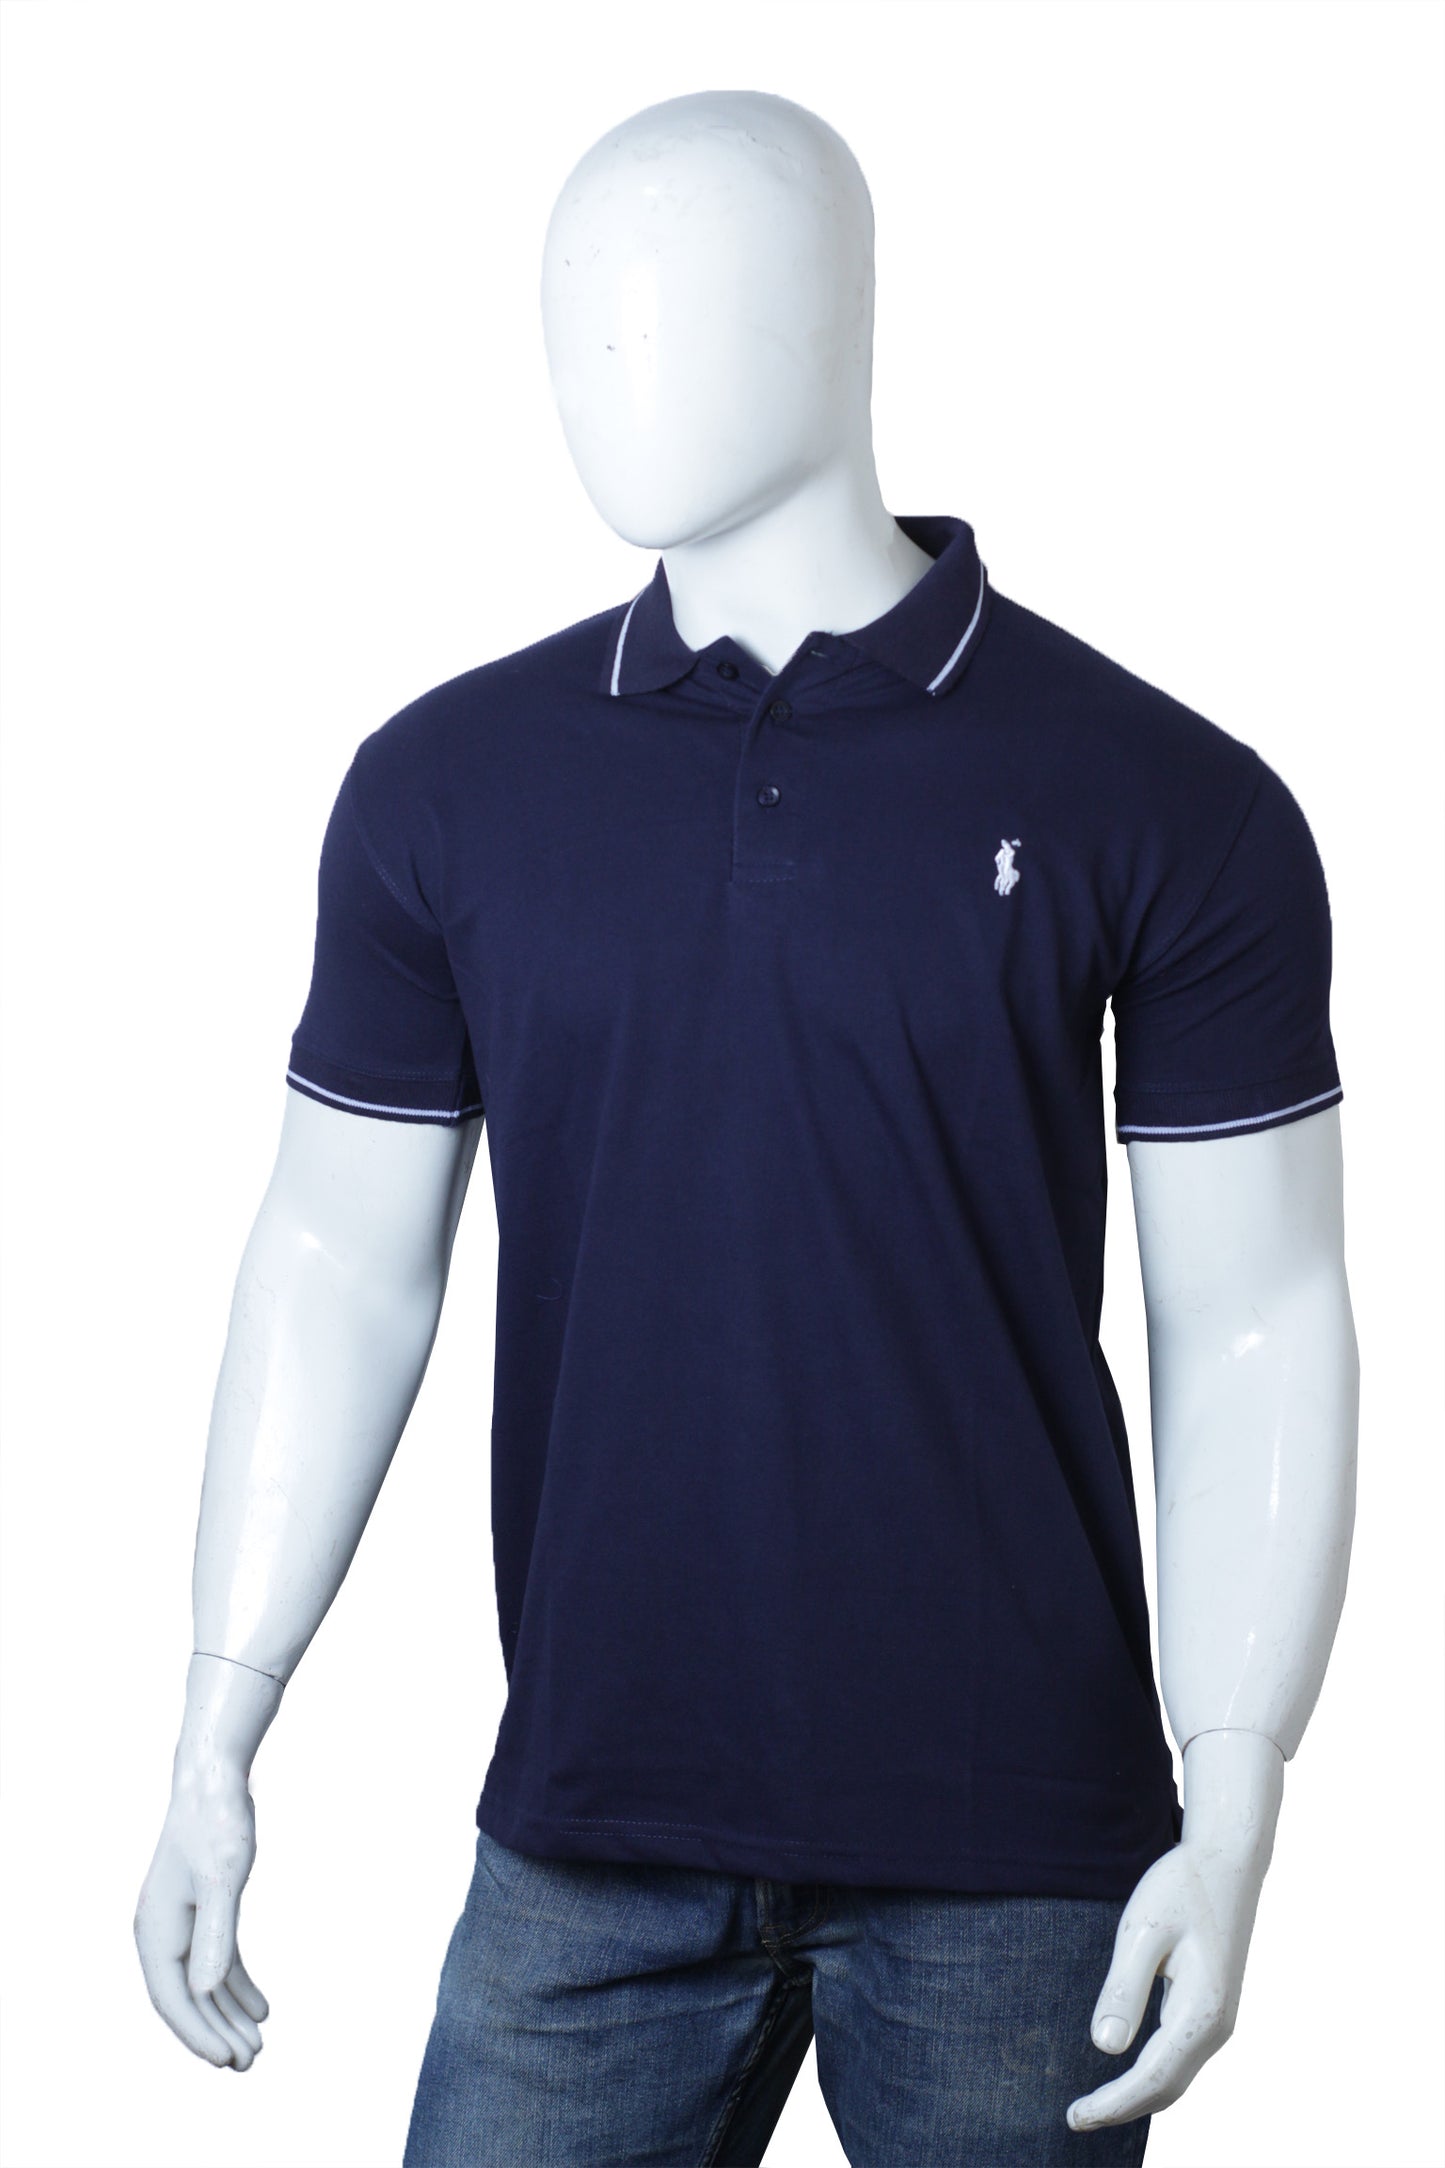 Navy Blue Basic Polo Shirt (cotton piqué material)